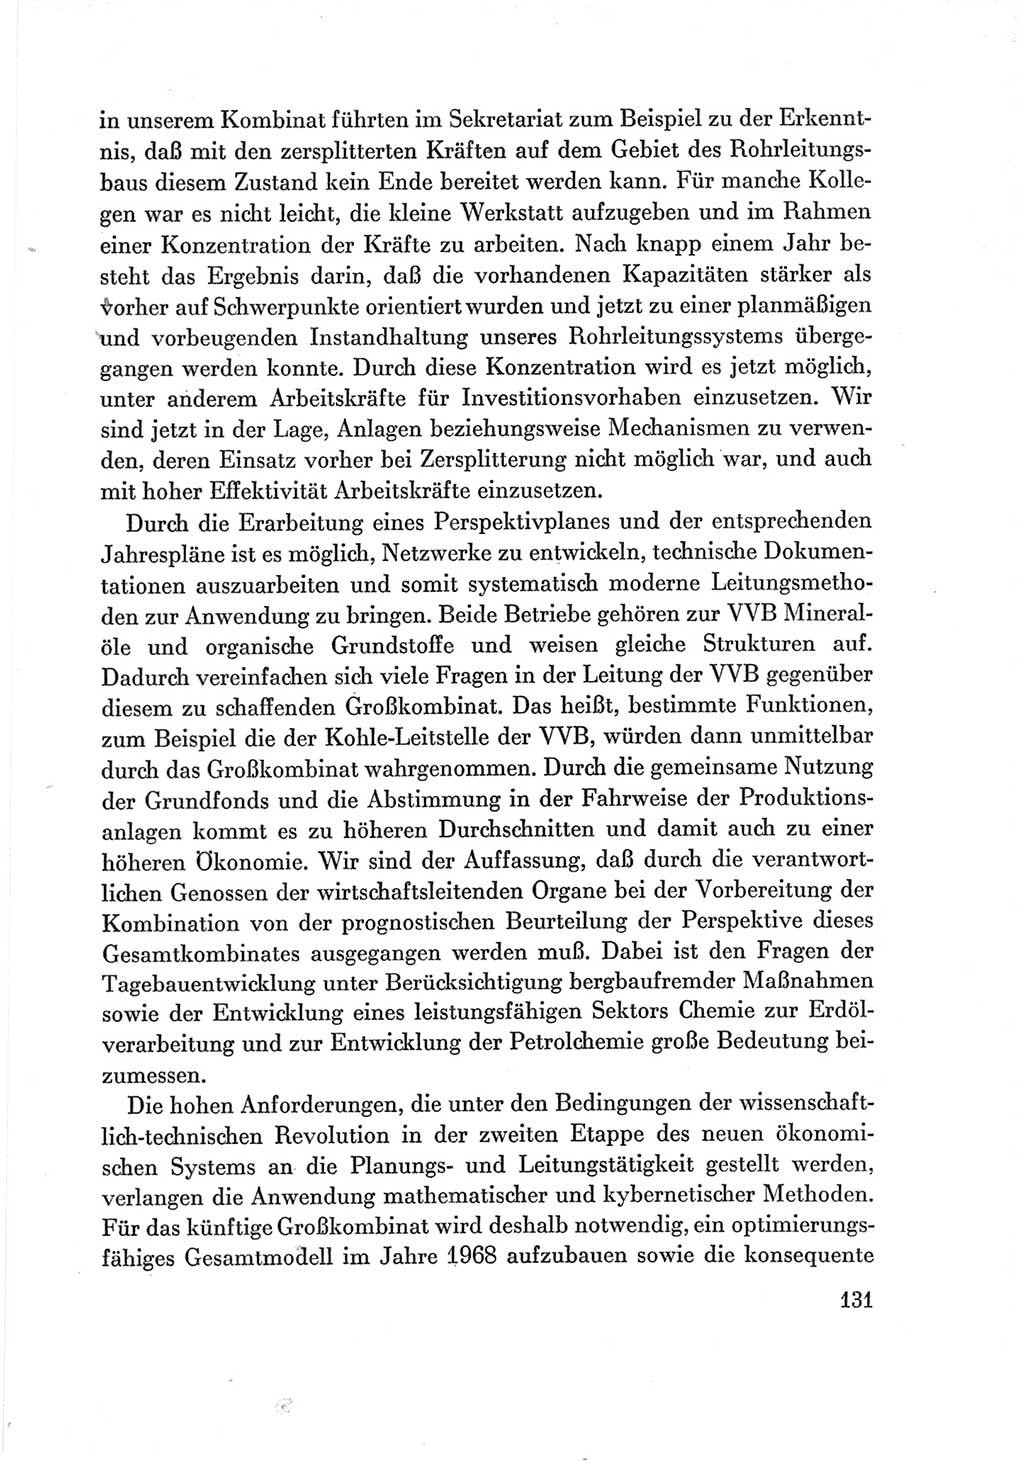 Protokoll der Verhandlungen des Ⅶ. Parteitages der Sozialistischen Einheitspartei Deutschlands (SED) [Deutsche Demokratische Republik (DDR)] 1967, Band Ⅲ, Seite 131 (Prot. Verh. Ⅶ. PT SED DDR 1967, Bd. Ⅲ, S. 131)